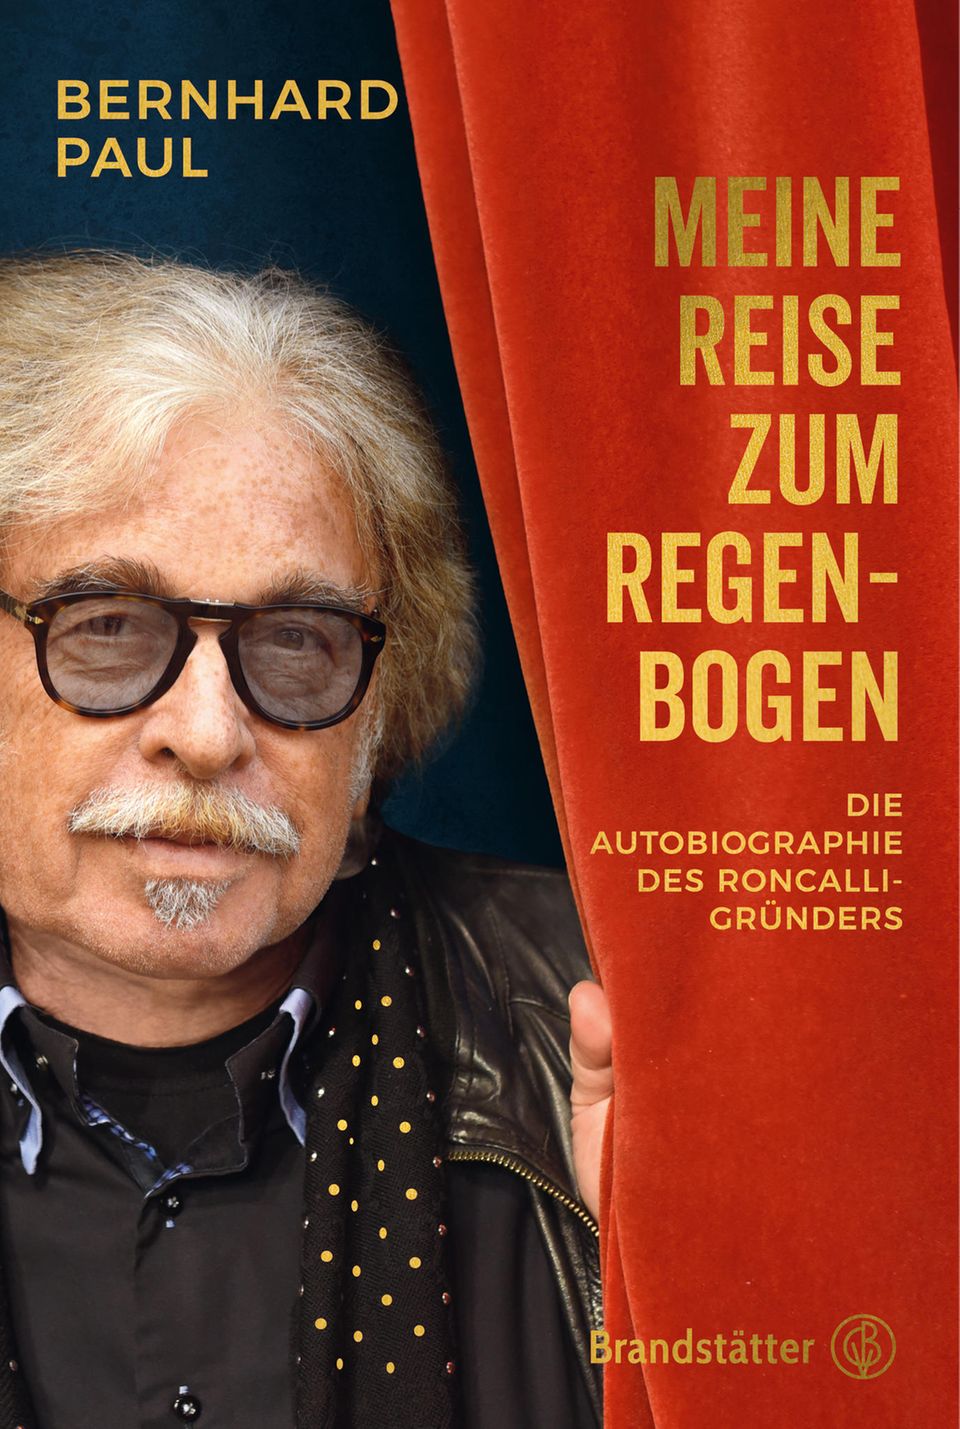 Die Autobiographie von Bernhard Paul ist Ende Oktober 2022 im Verlag Brandstätter erschienen